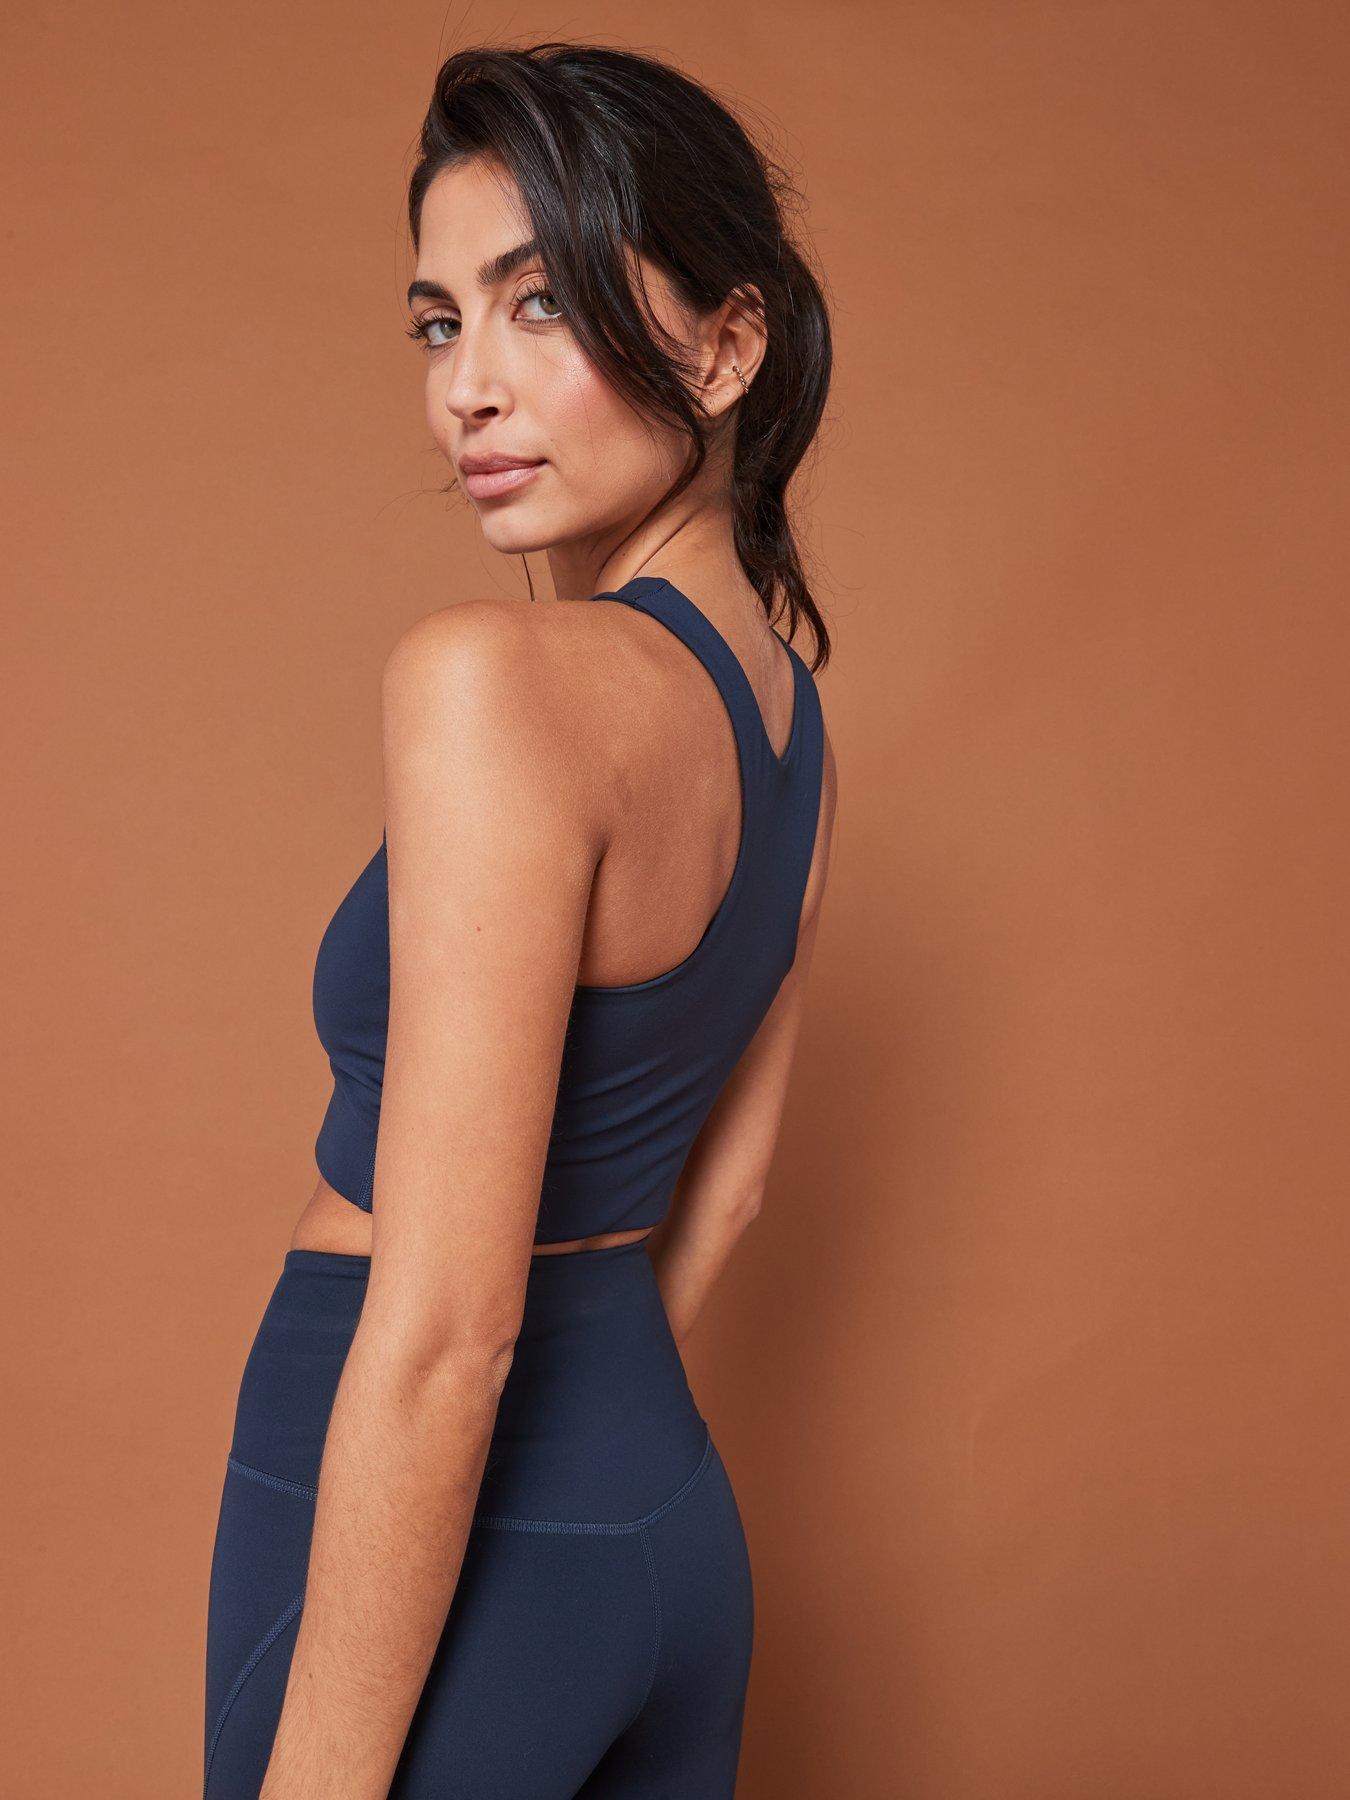 Denim Blue Lace Racerback Lined Bralette – Infinity Lace Boutique